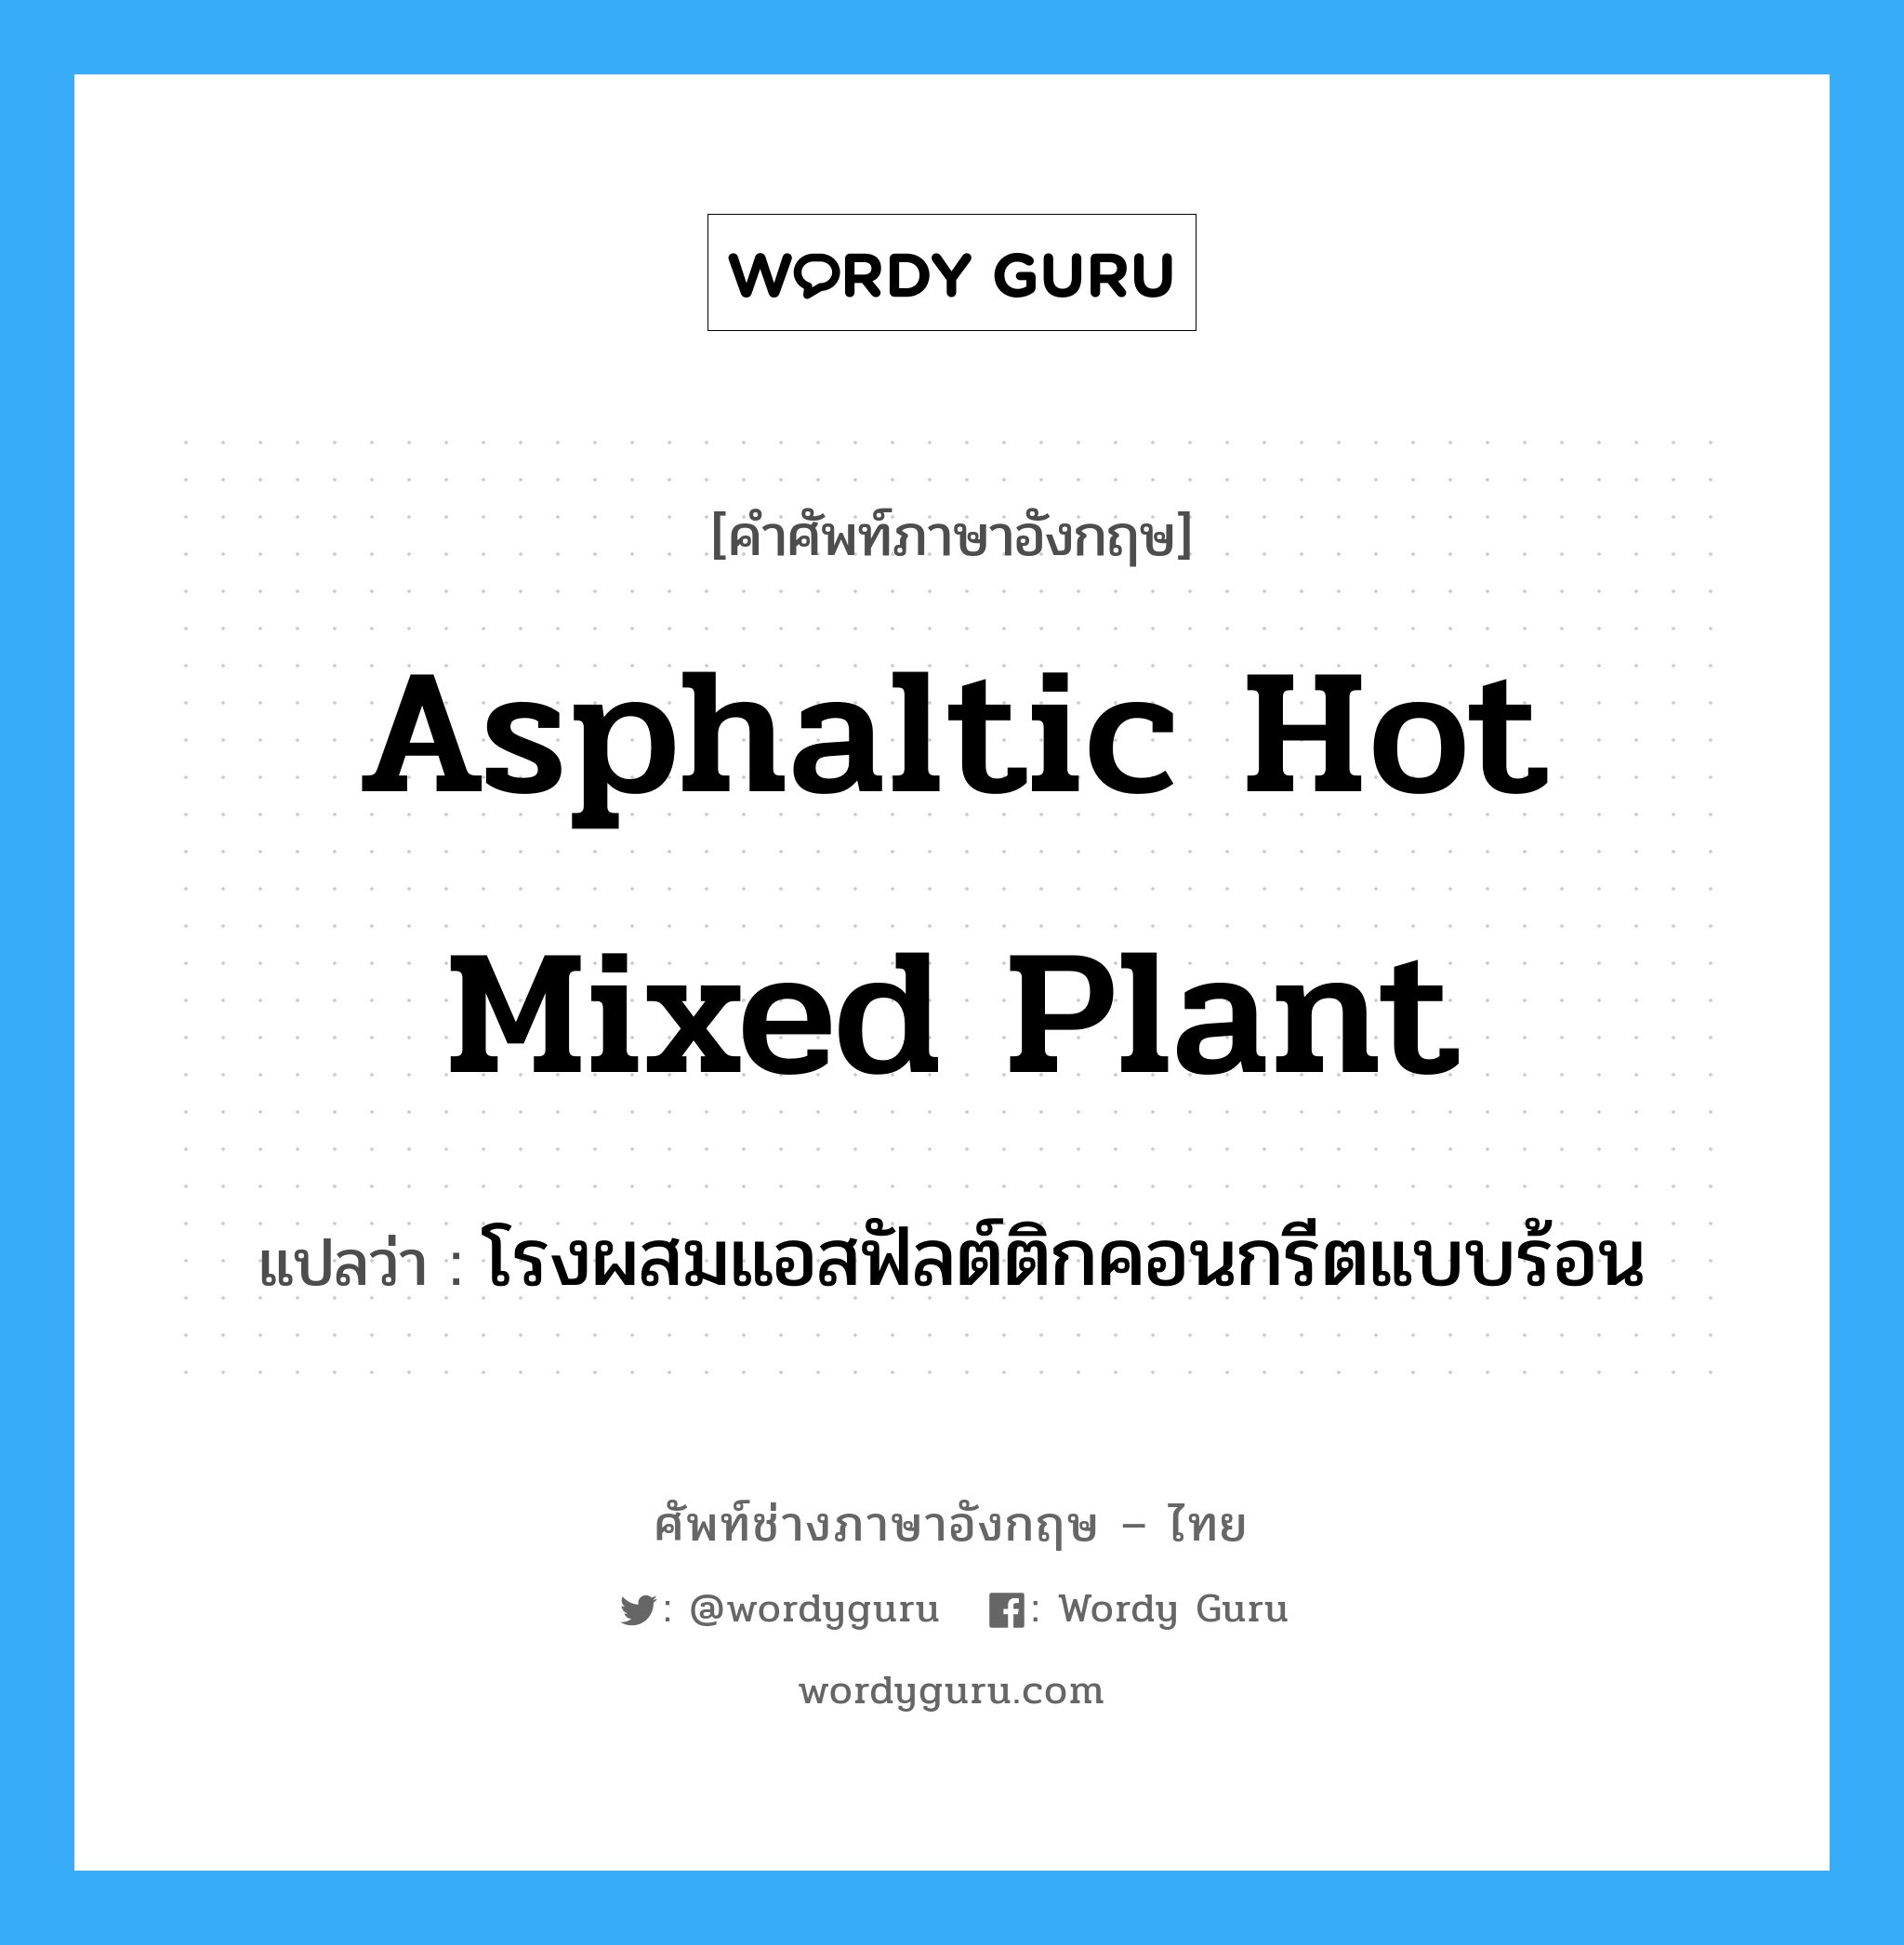 โรงผสมแอสฟัลต์ติกคอนกรีตแบบร้อน ภาษาอังกฤษ?, คำศัพท์ช่างภาษาอังกฤษ - ไทย โรงผสมแอสฟัลต์ติกคอนกรีตแบบร้อน คำศัพท์ภาษาอังกฤษ โรงผสมแอสฟัลต์ติกคอนกรีตแบบร้อน แปลว่า asphaltic hot mixed plant